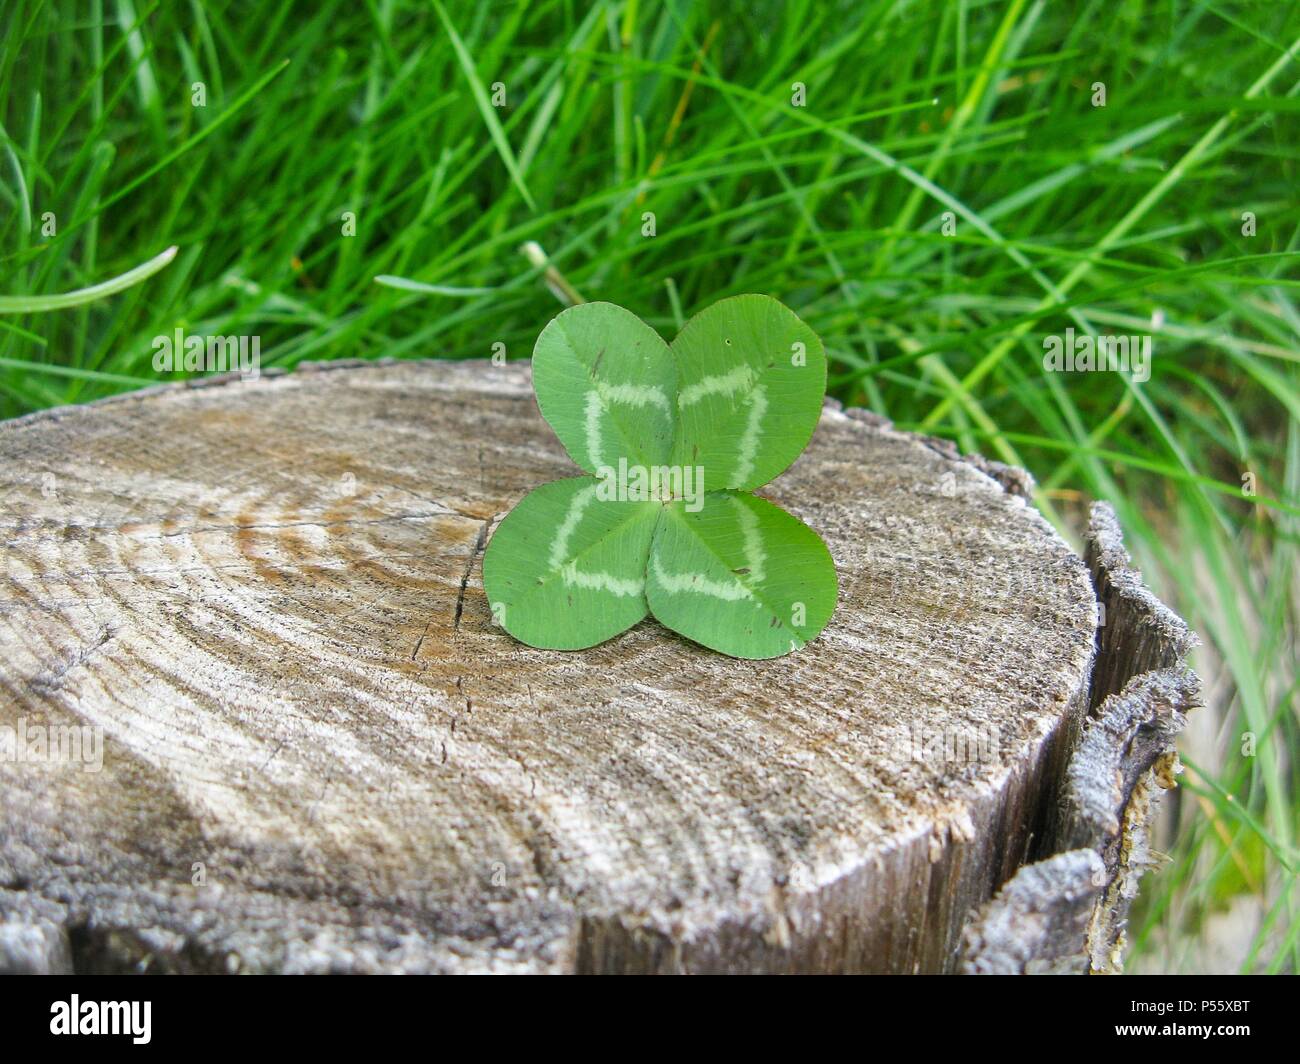 Vierblättrigen Kleeblatt Blume bringt Glück Stockfotografie - Alamy